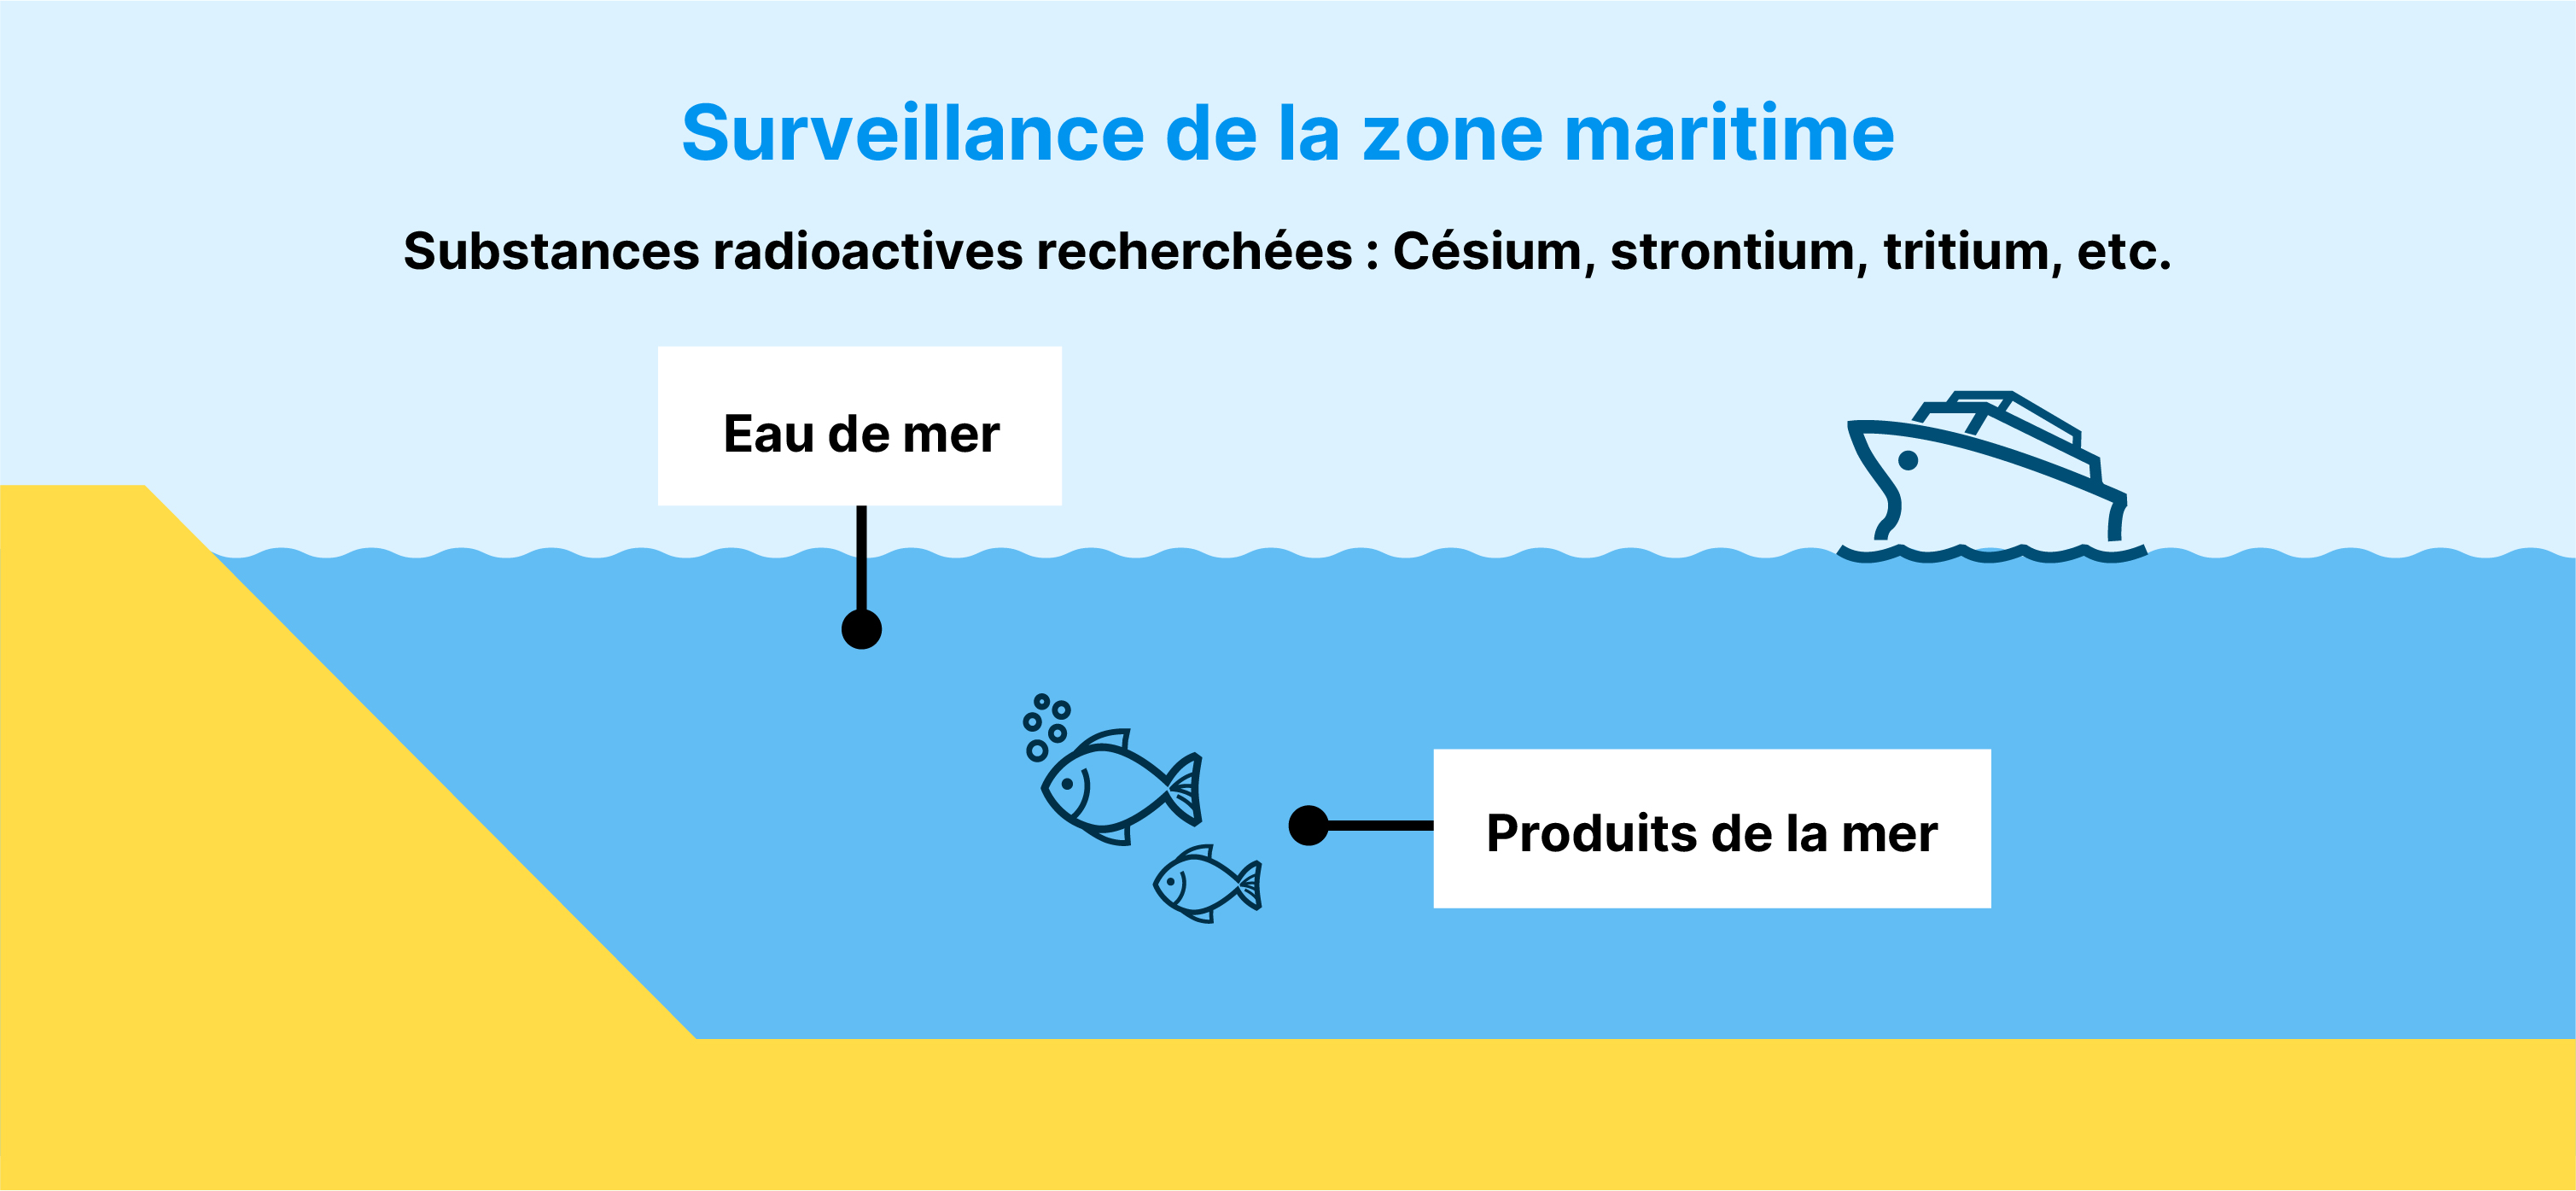 Surveillance de la zone maritime Substances radioactives recherchées : Césium, strontium, tritium, etc. Eau de mer Produits de la mer